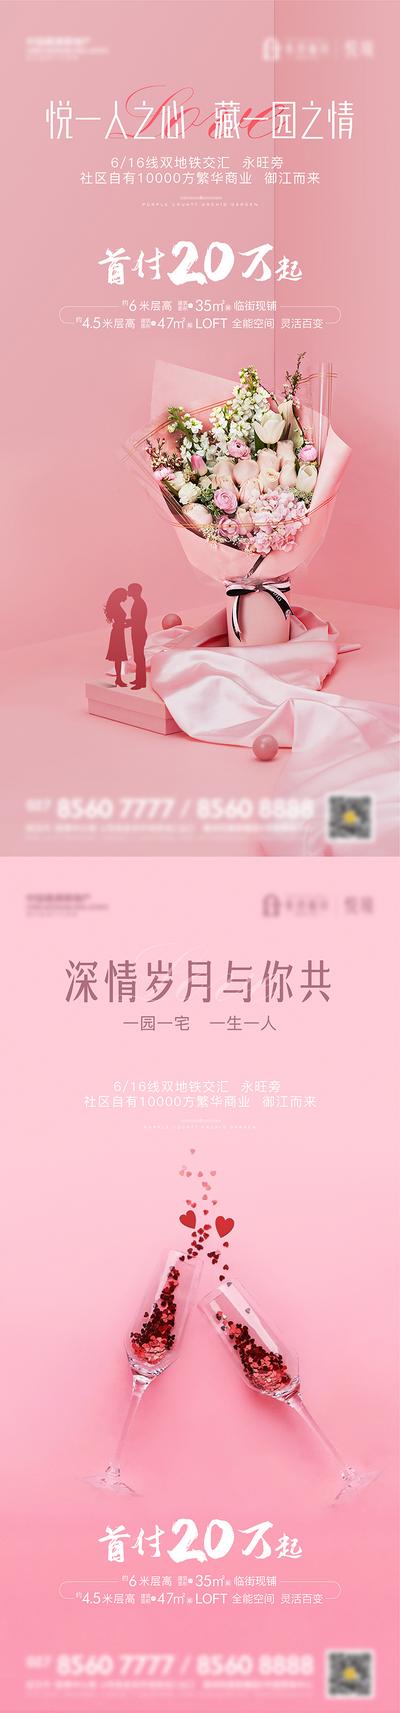 南门网 海报 地产 公历节日 情人节 简洁 爱心 酒杯 玫瑰